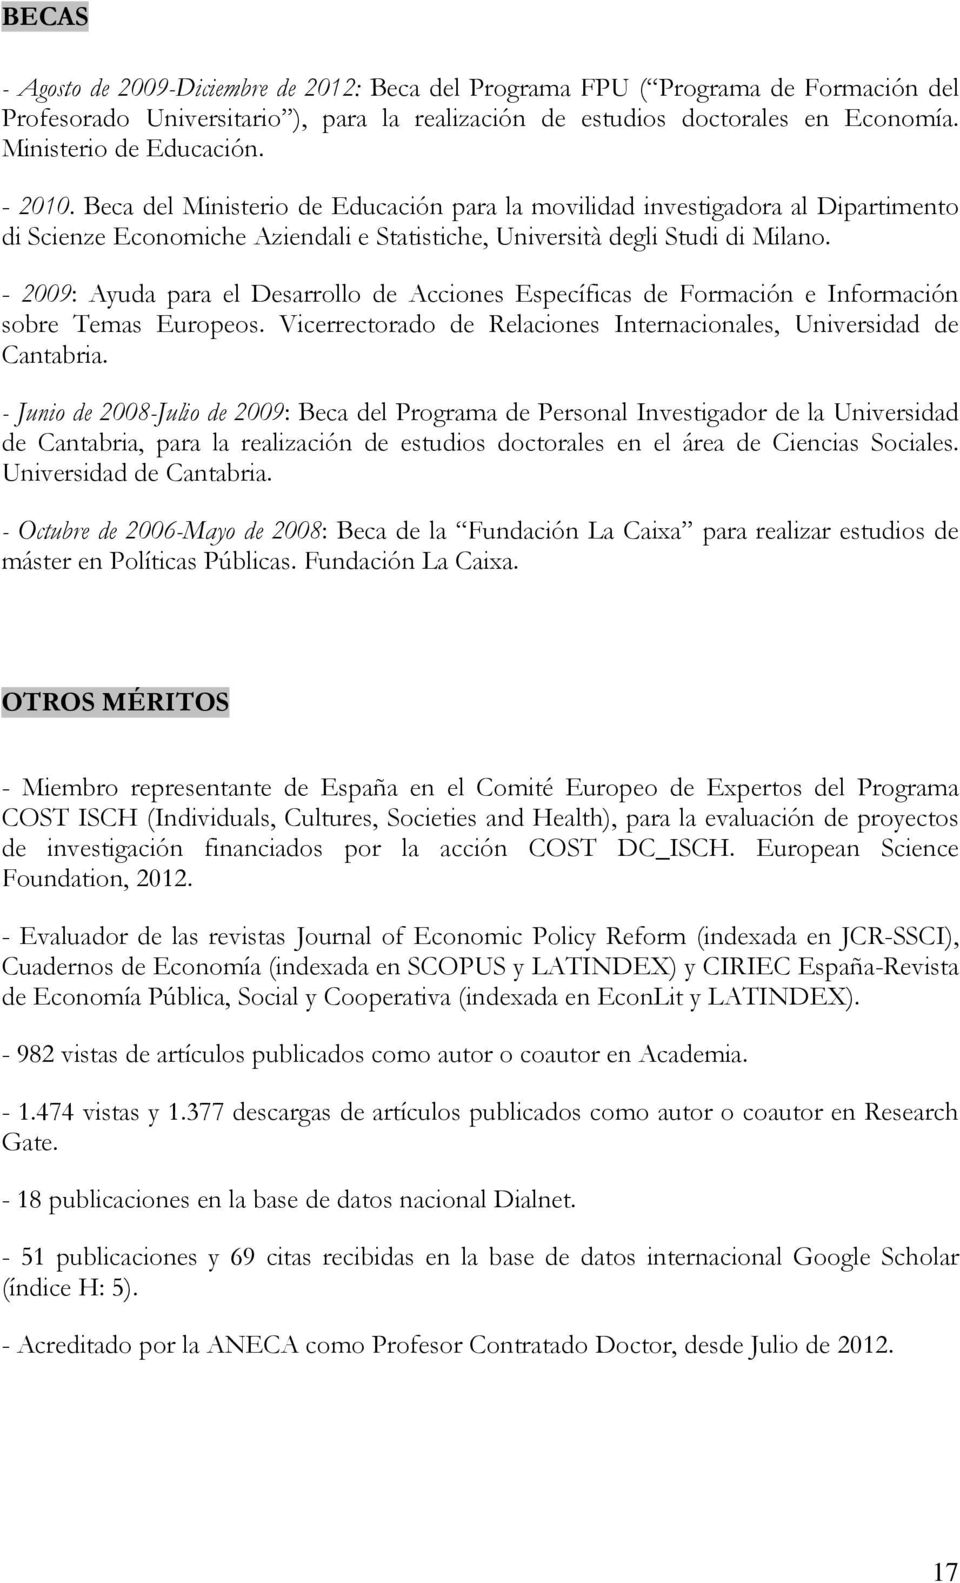 - 2009: Ayuda para el Desarrollo de Acciones Específicas de Formación e Información sobre Temas Europeos. Vicerrectorado de Relaciones Internacionales, Universidad de Cantabria.